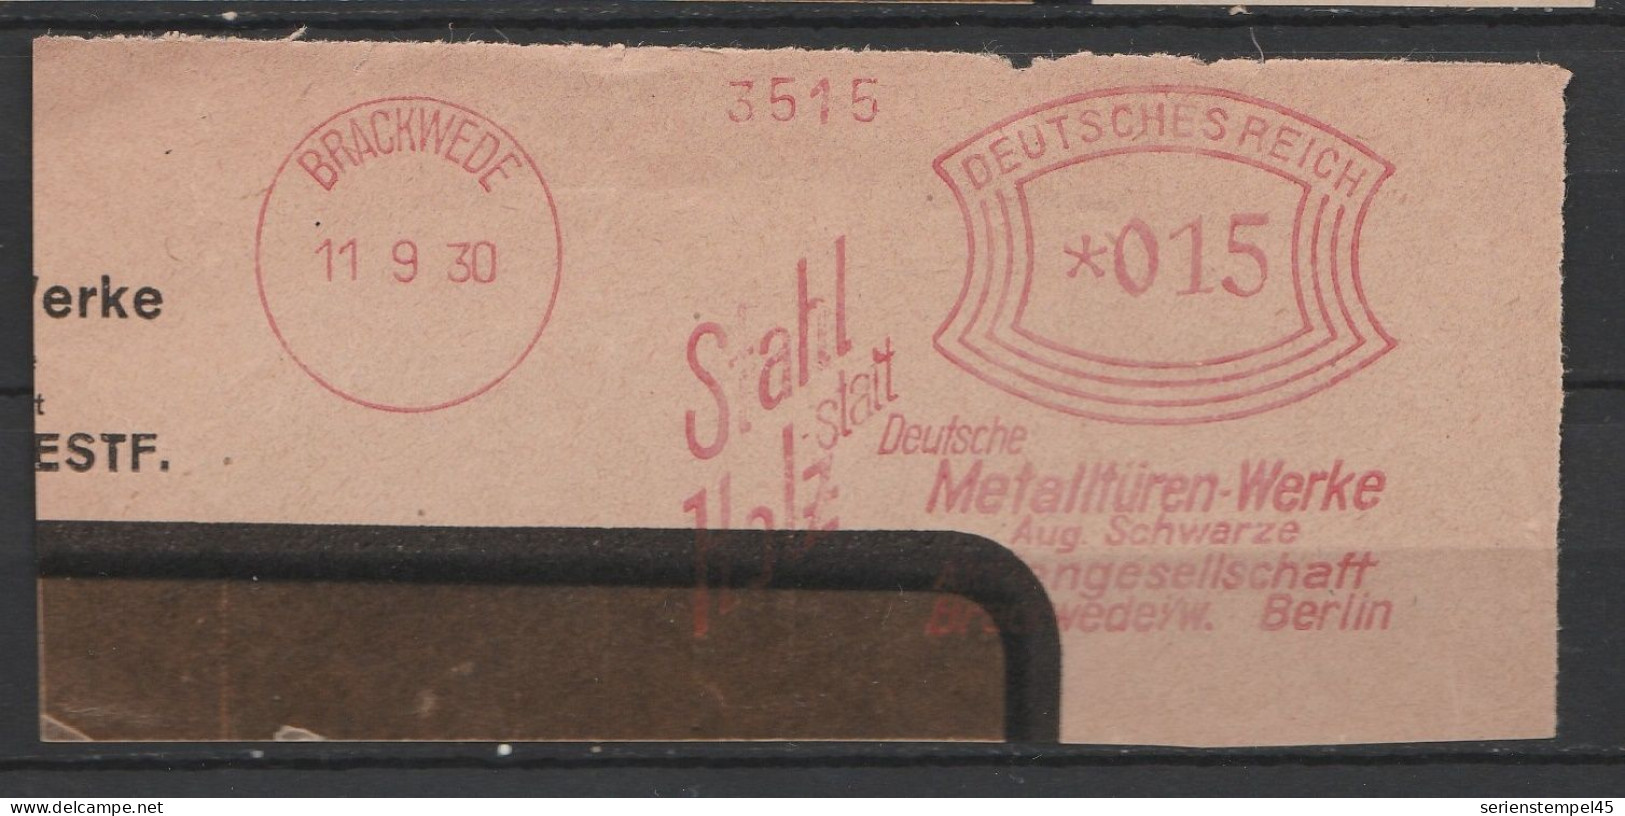 Deutsches Reich Briefstück Mit Freistempel Brackewede 1930 Deutsche Metalltüren Werke Aug. Schwarze - Macchine Per Obliterare